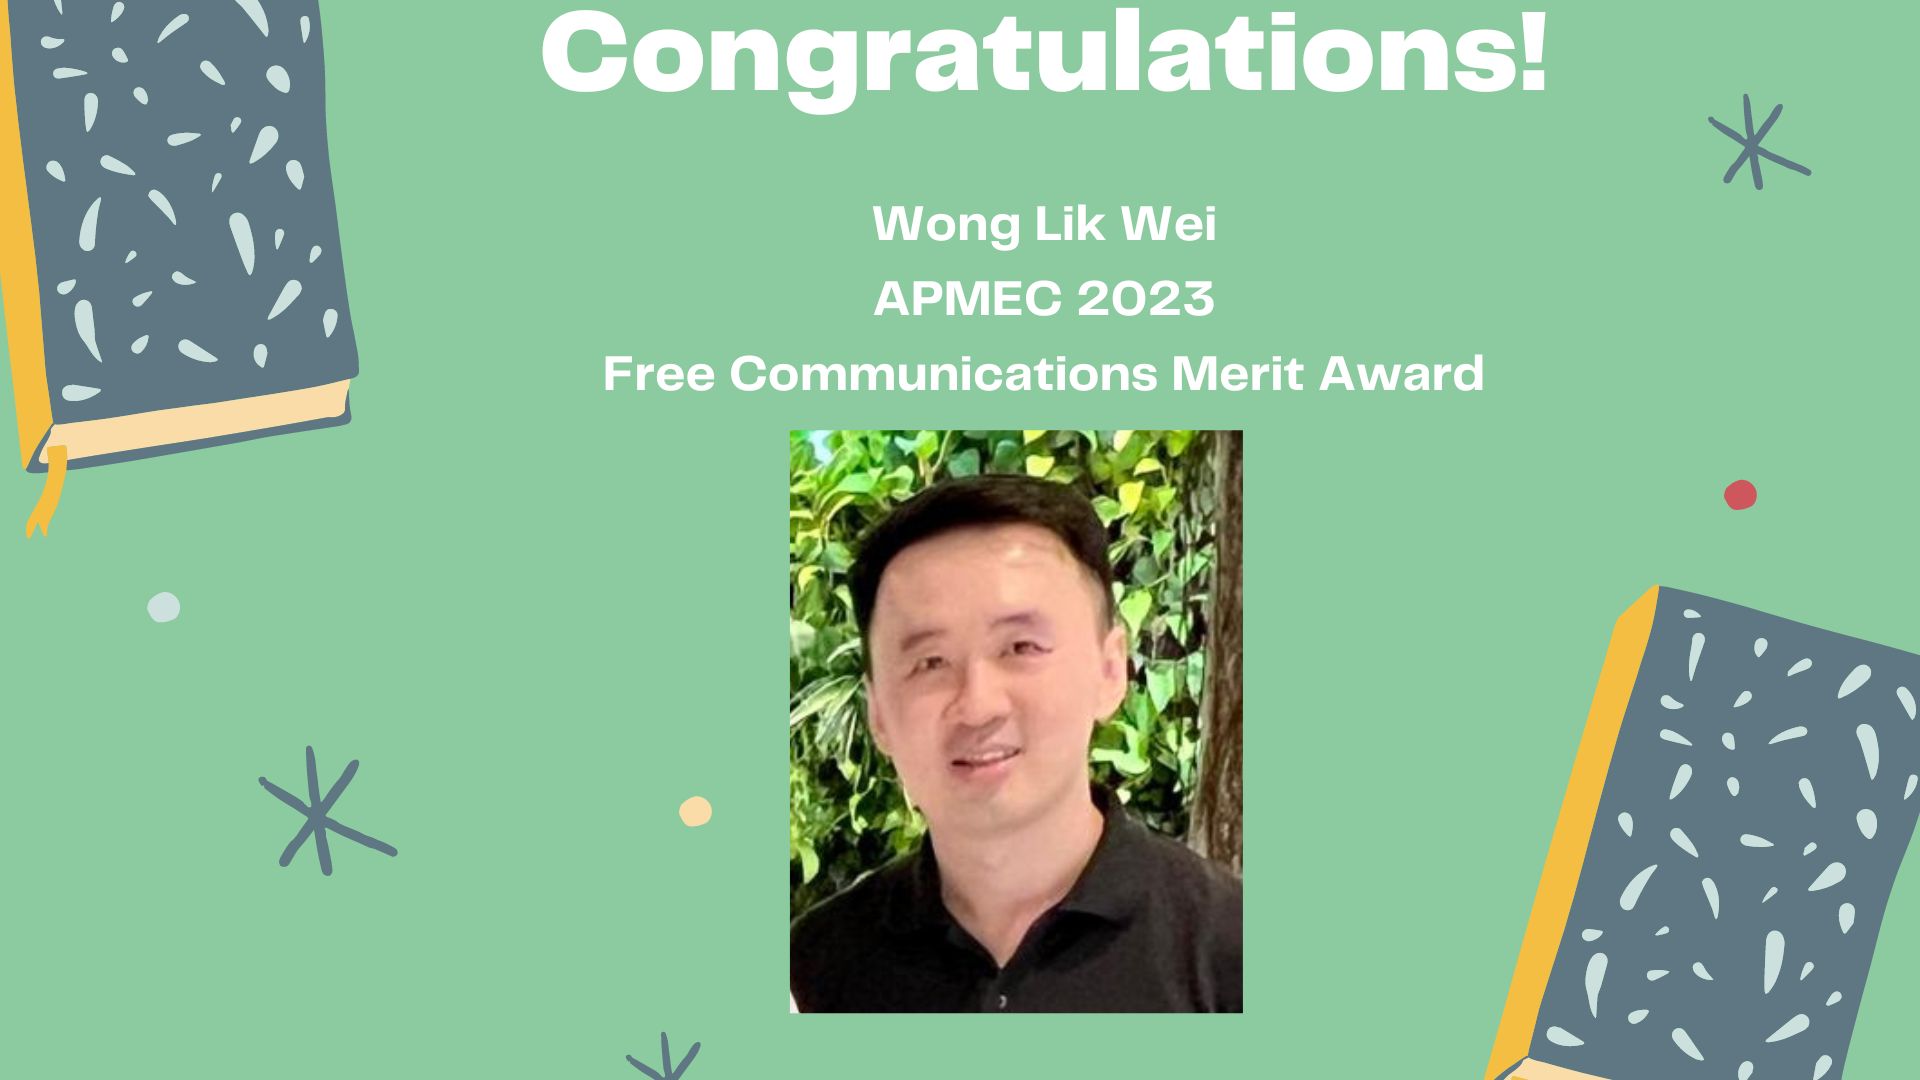 Wong Lik Wei awarded APMEC 2023 Free Communications Merit Award